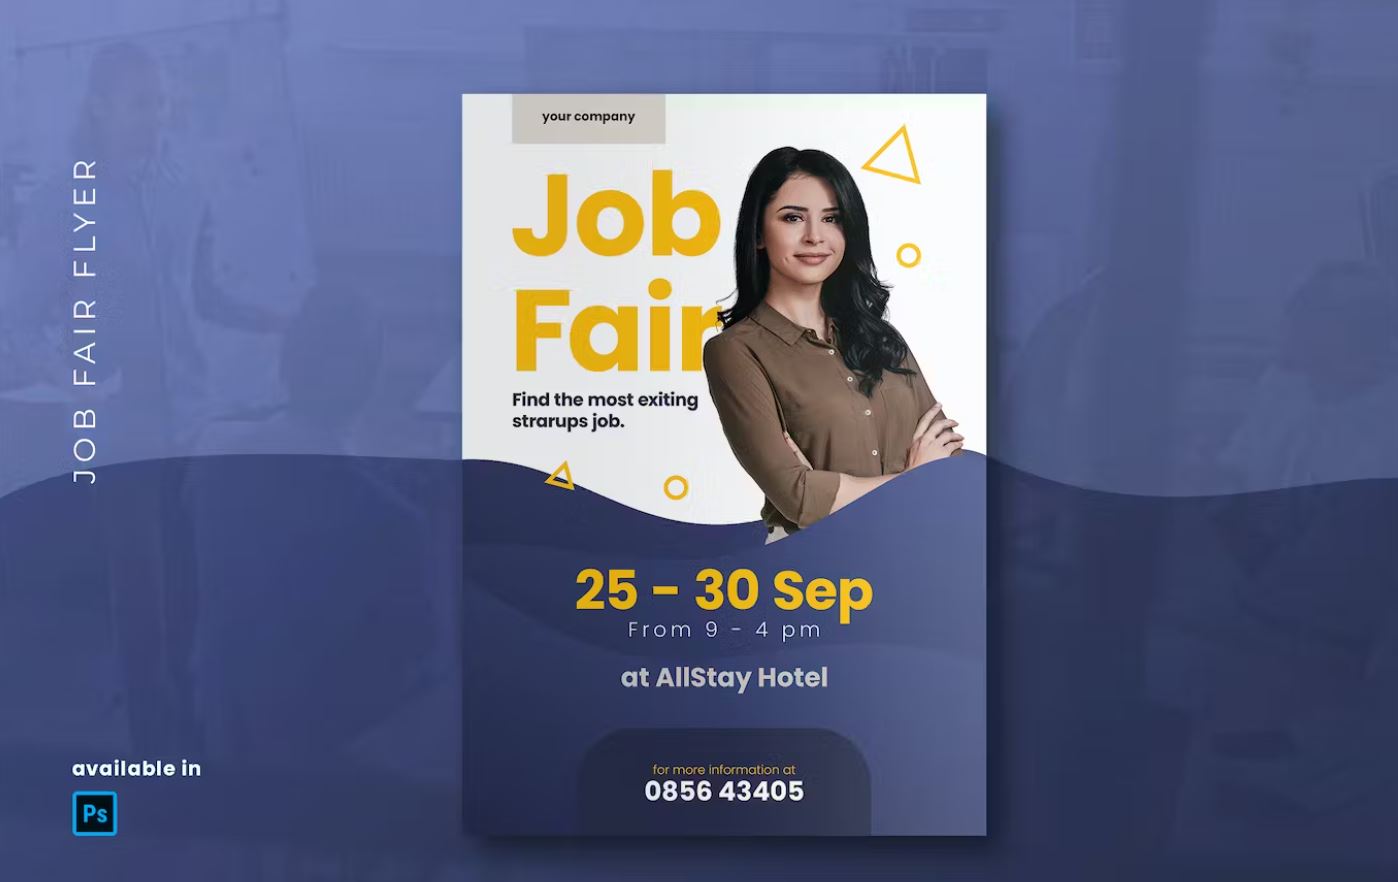 Job fair flyer with geimetric